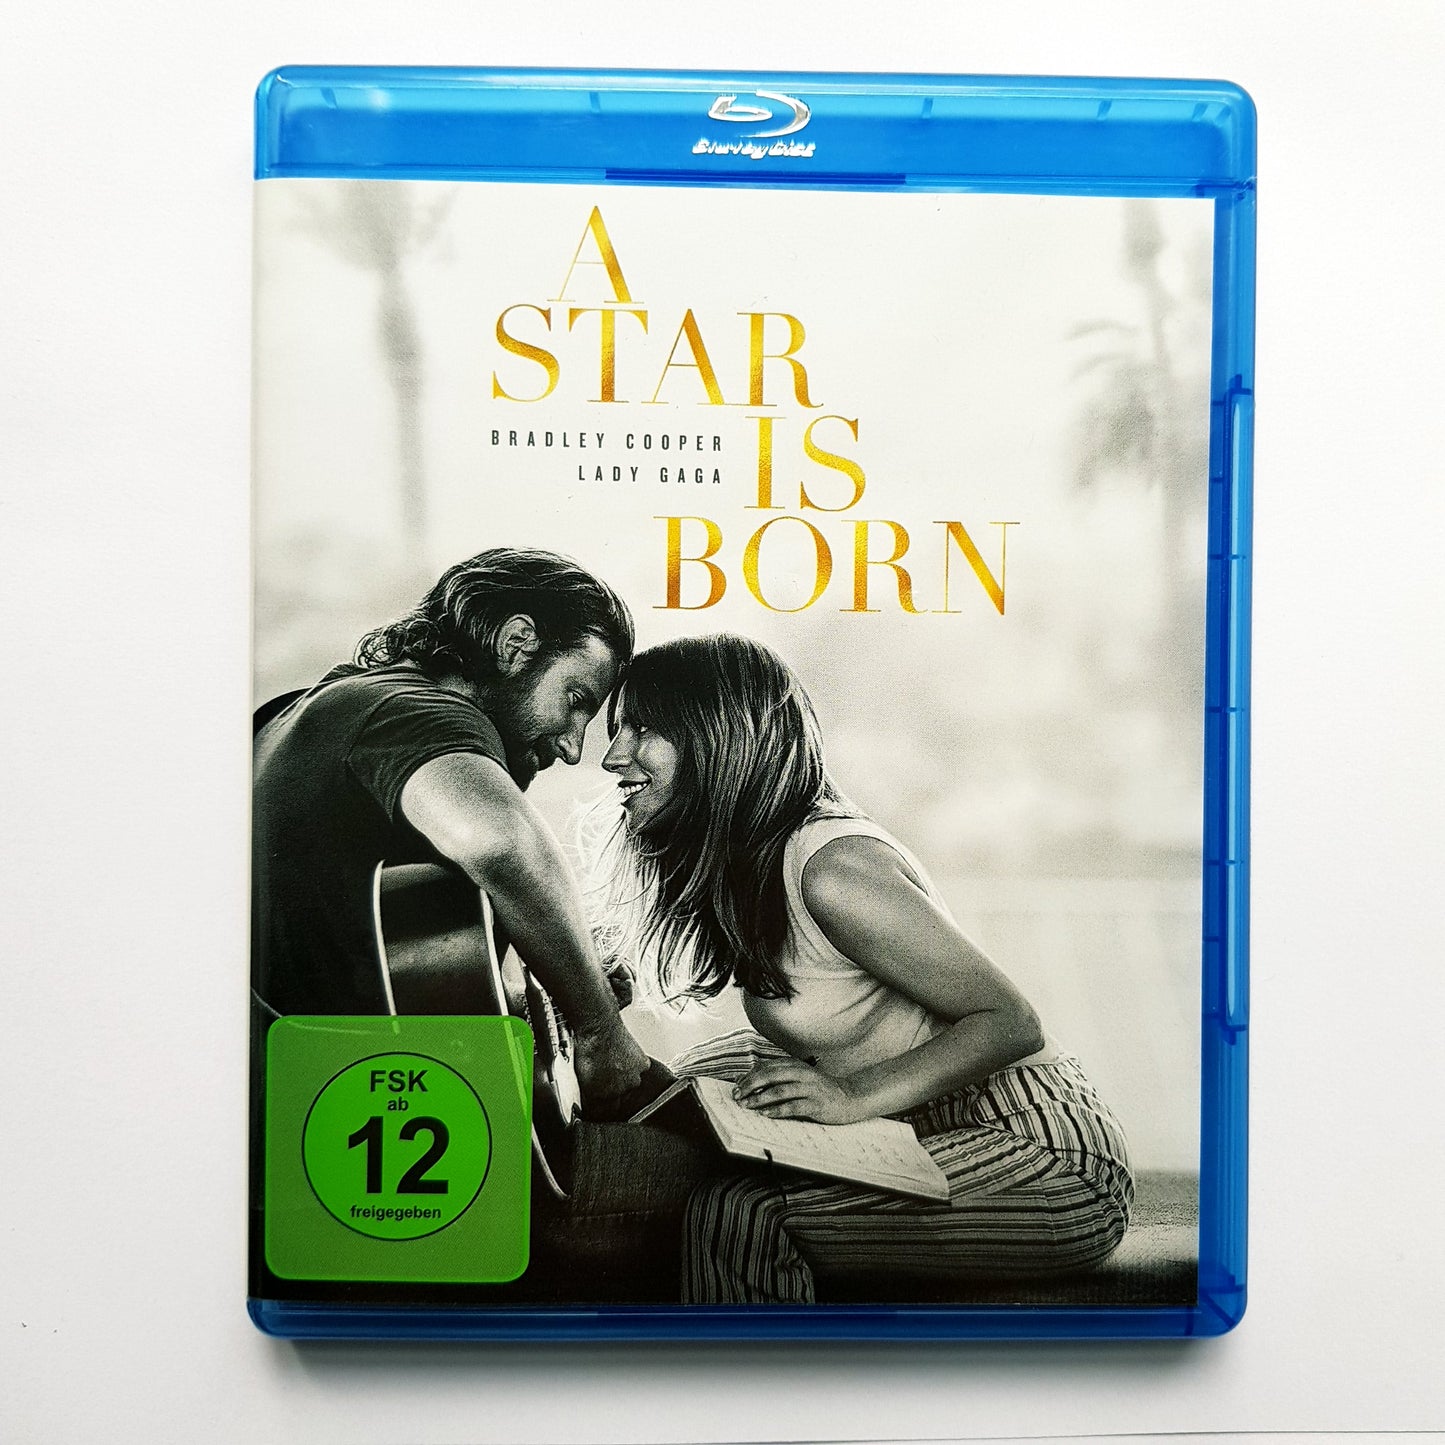 A Star is born - Bradley Cooper & Lady Gaga - Blu Ray Zustand sehr gut